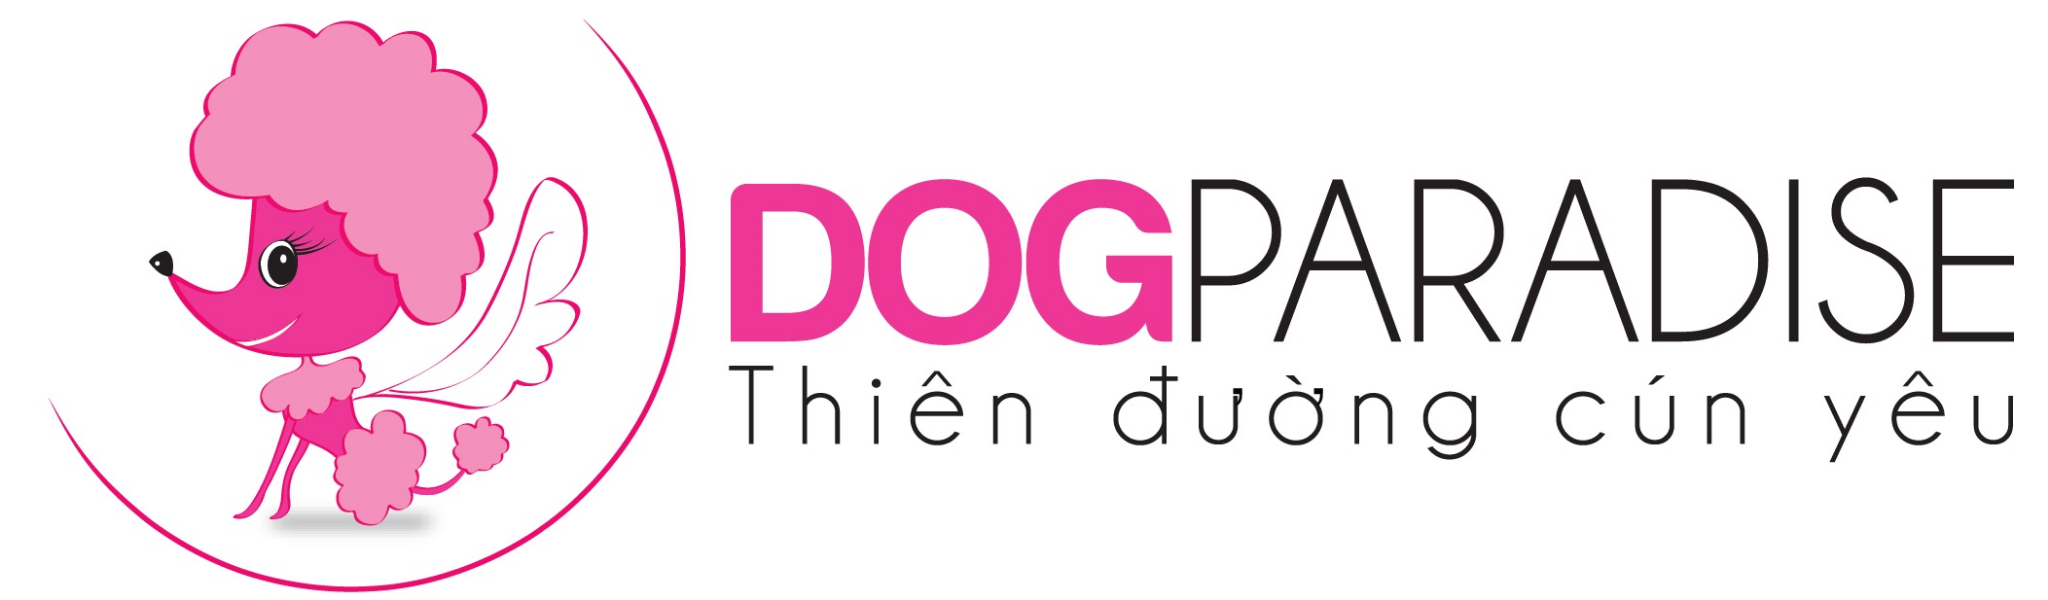 DogParadise - Shop thú cưng - Pet shop số 1 TPHCM